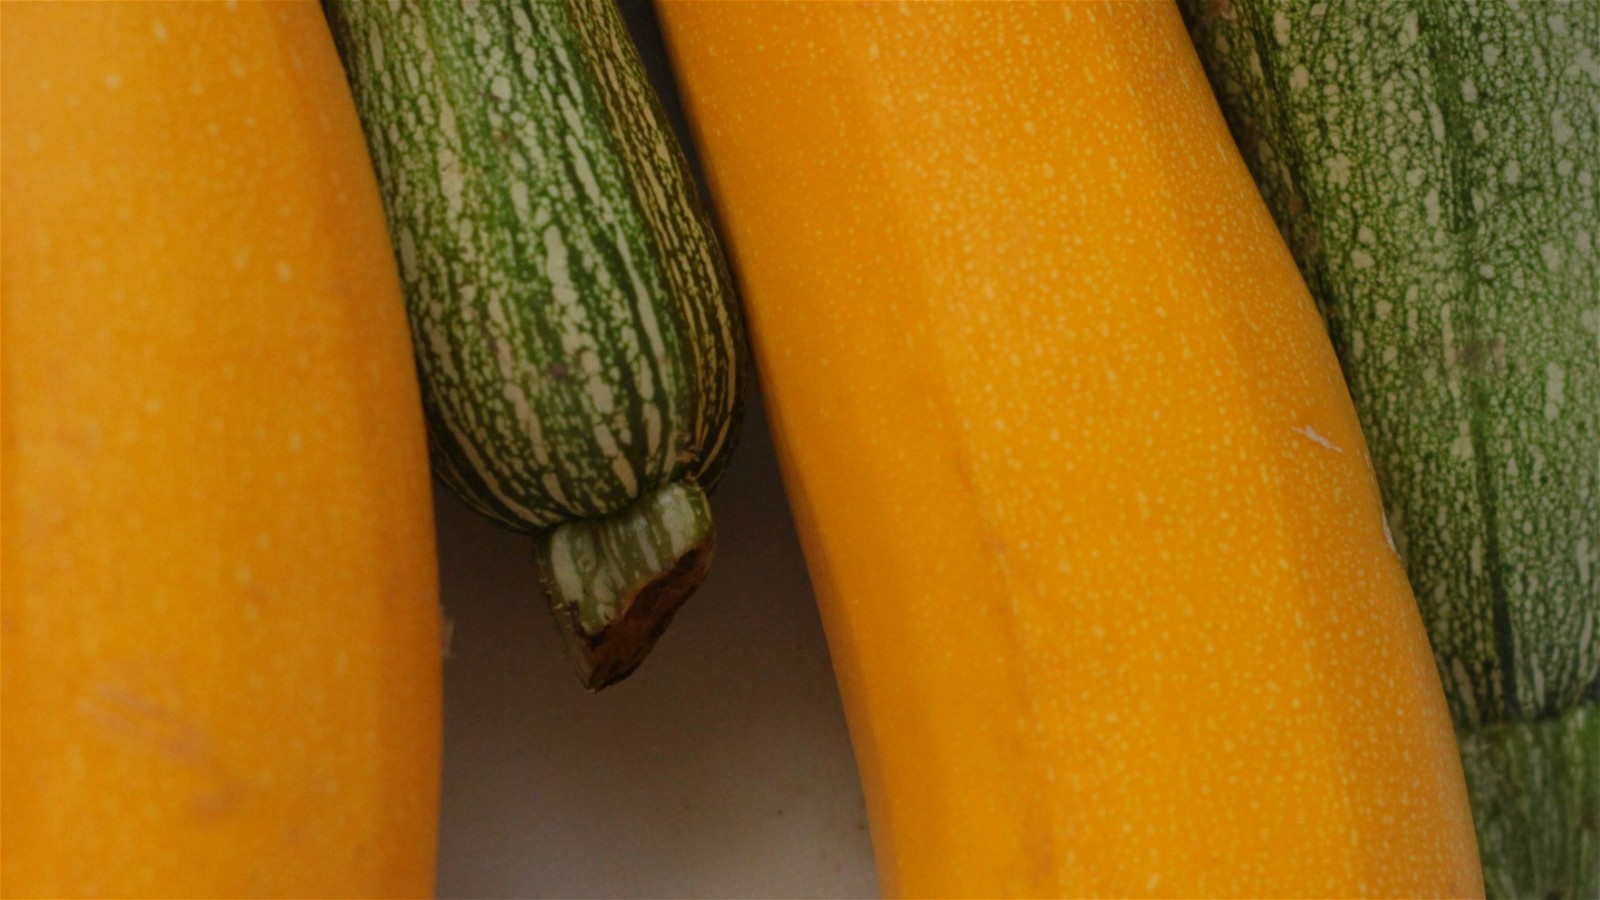 Image of Provencal Style Stuffed Zucchini